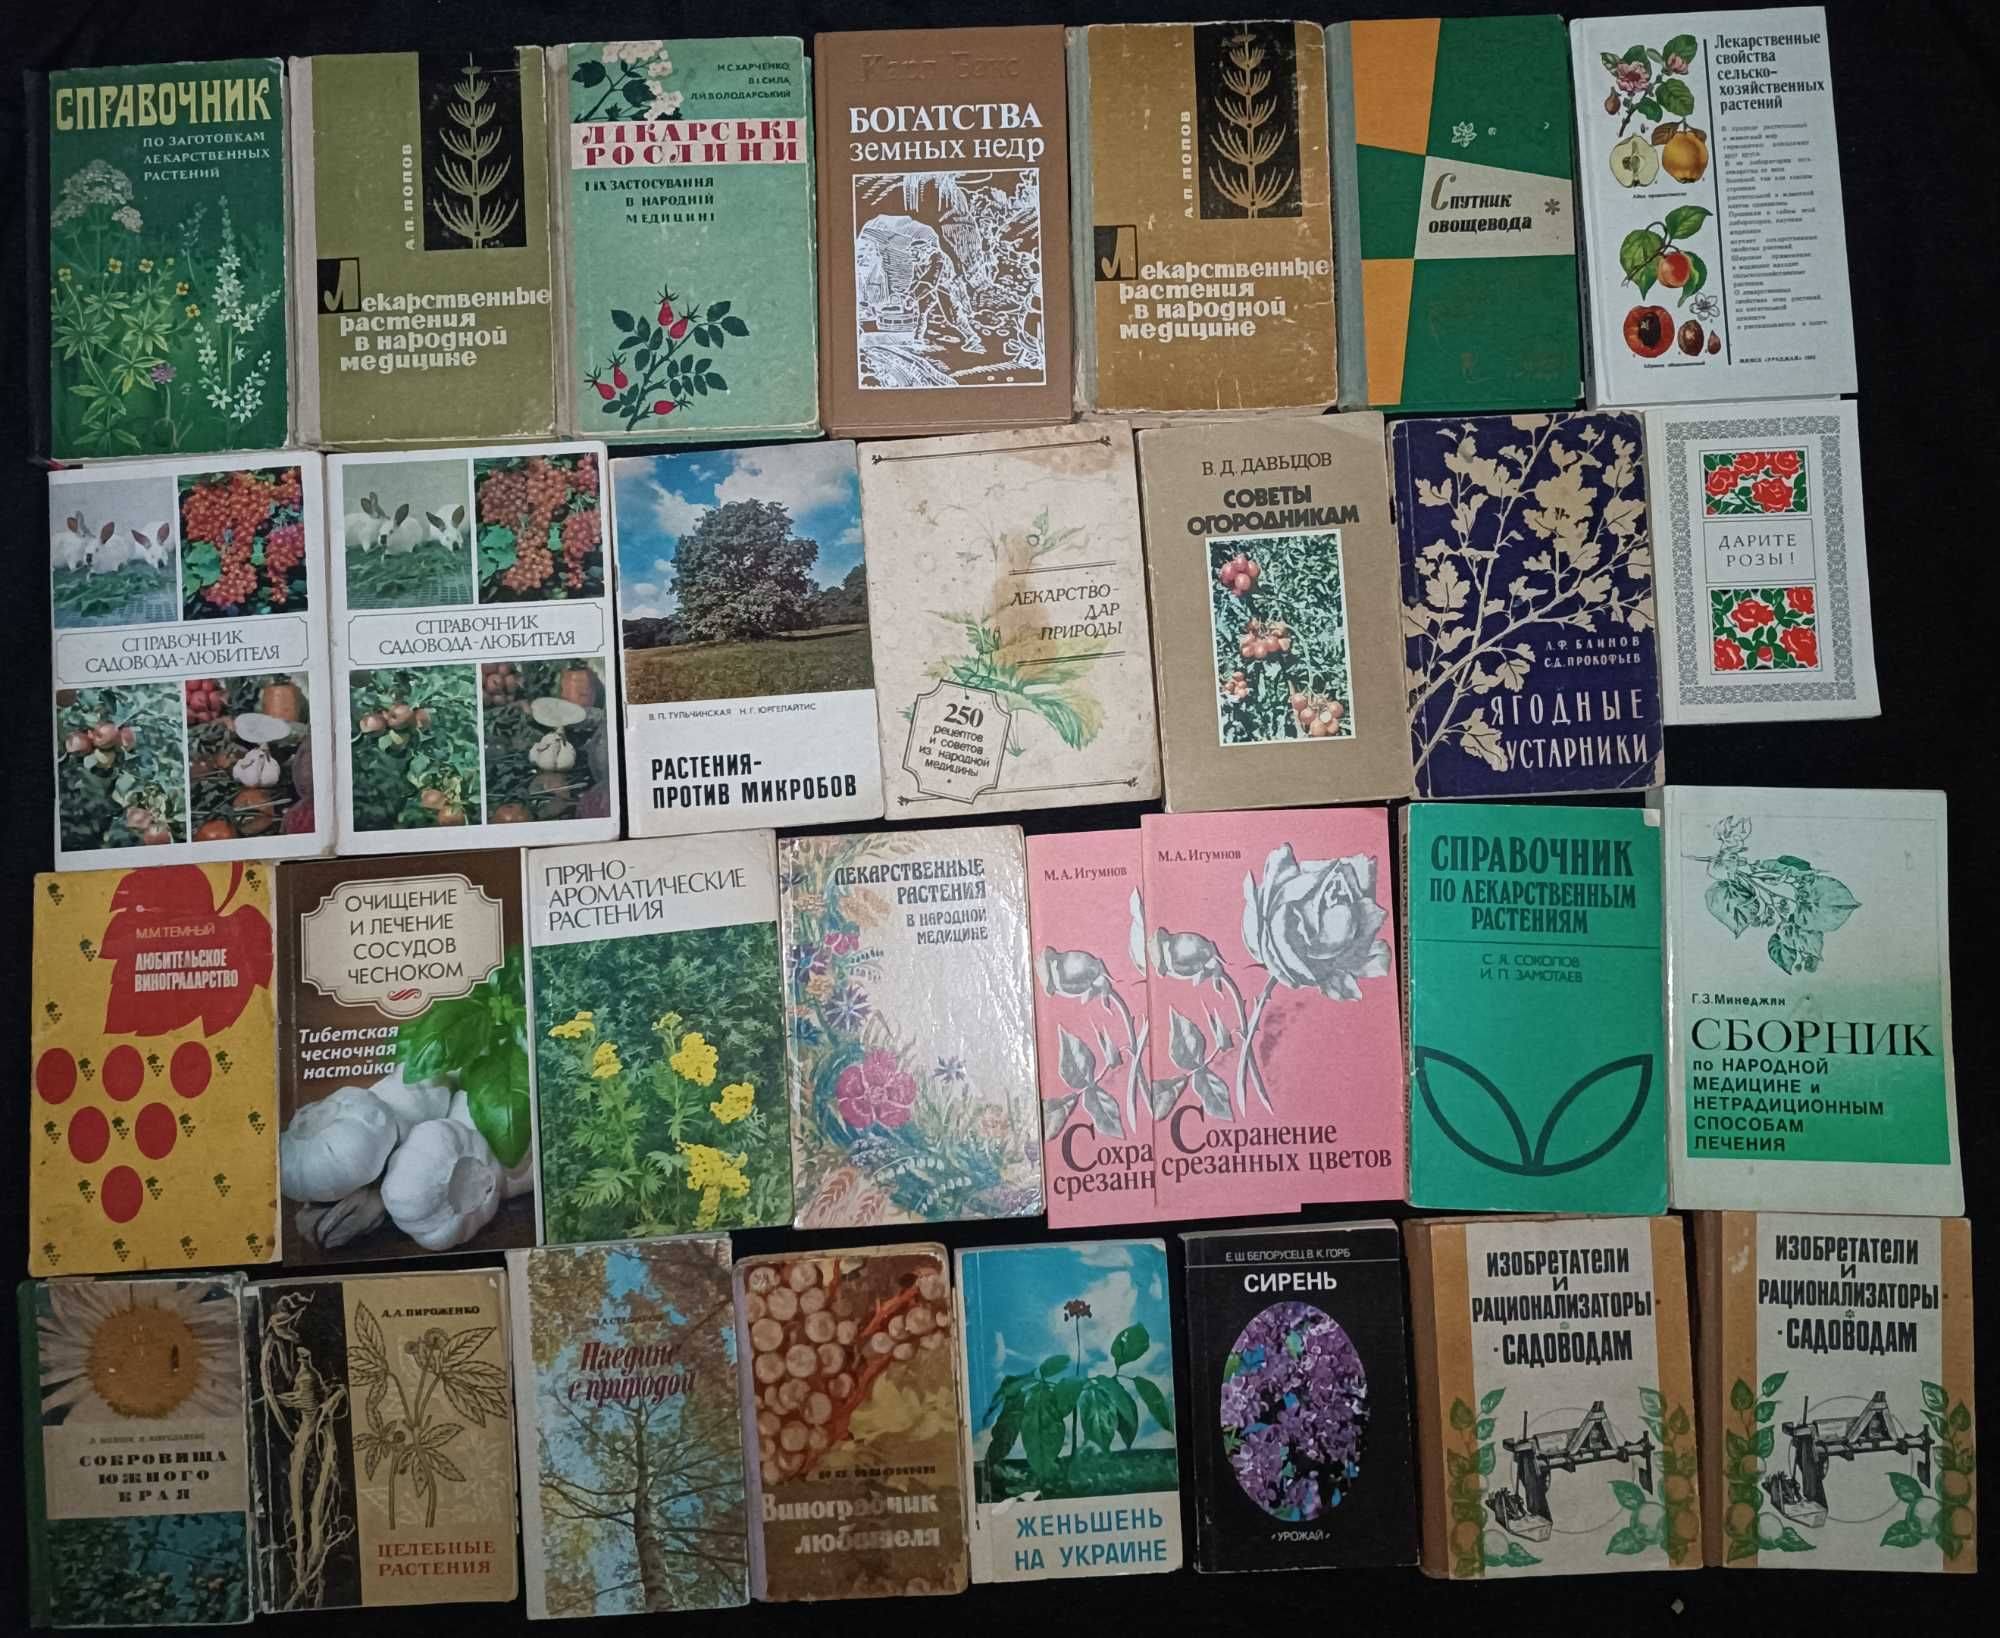 №2 -Различные книги по растениям агрономии и прочему (16.1)